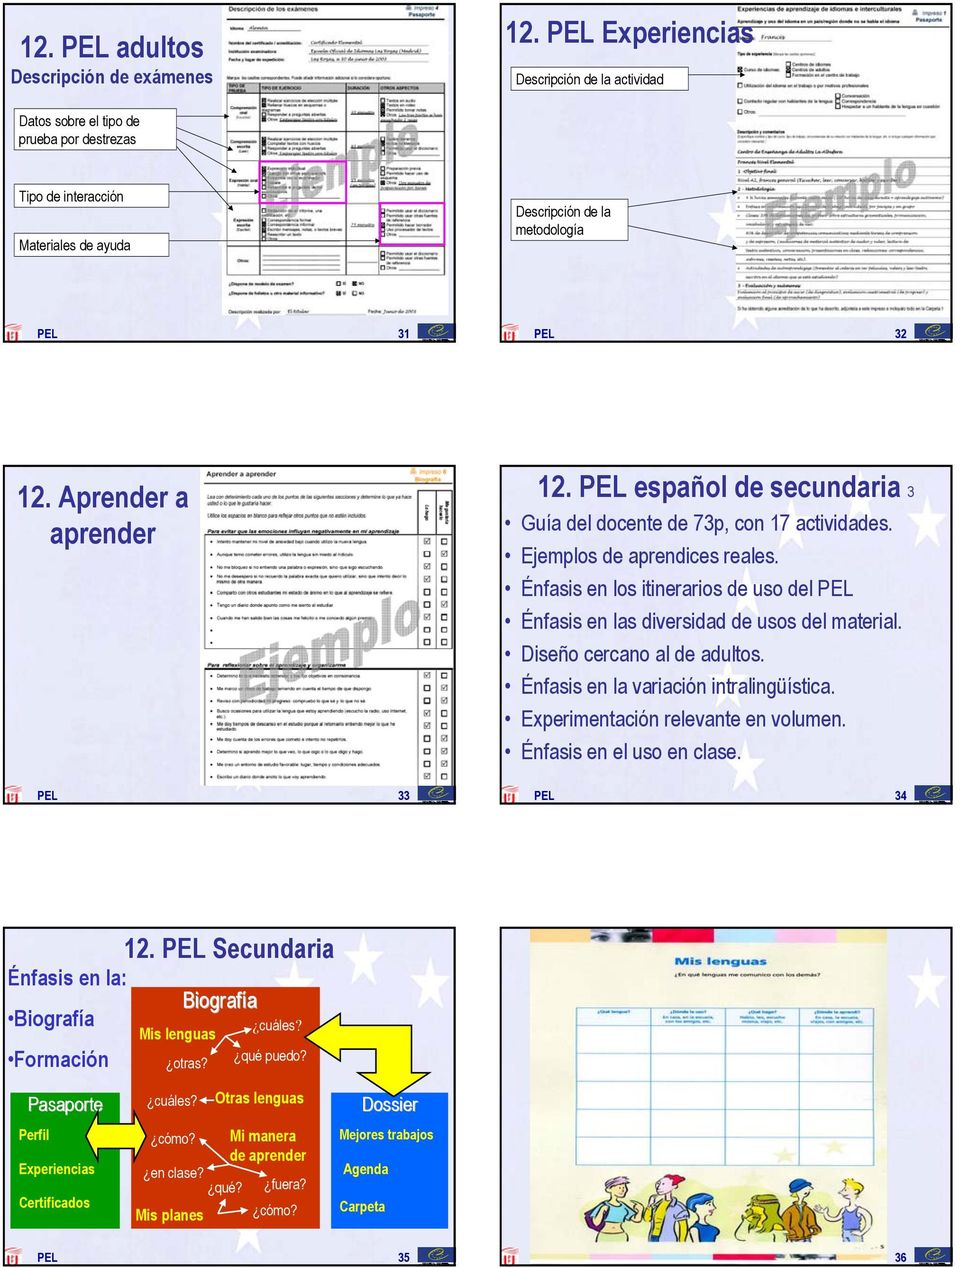 Aprender a aprender PEL 33 12. PEL español de secundaria 3 Guía del docente de 73p, con 17 actividades. Ejemplos de aprendices reales.